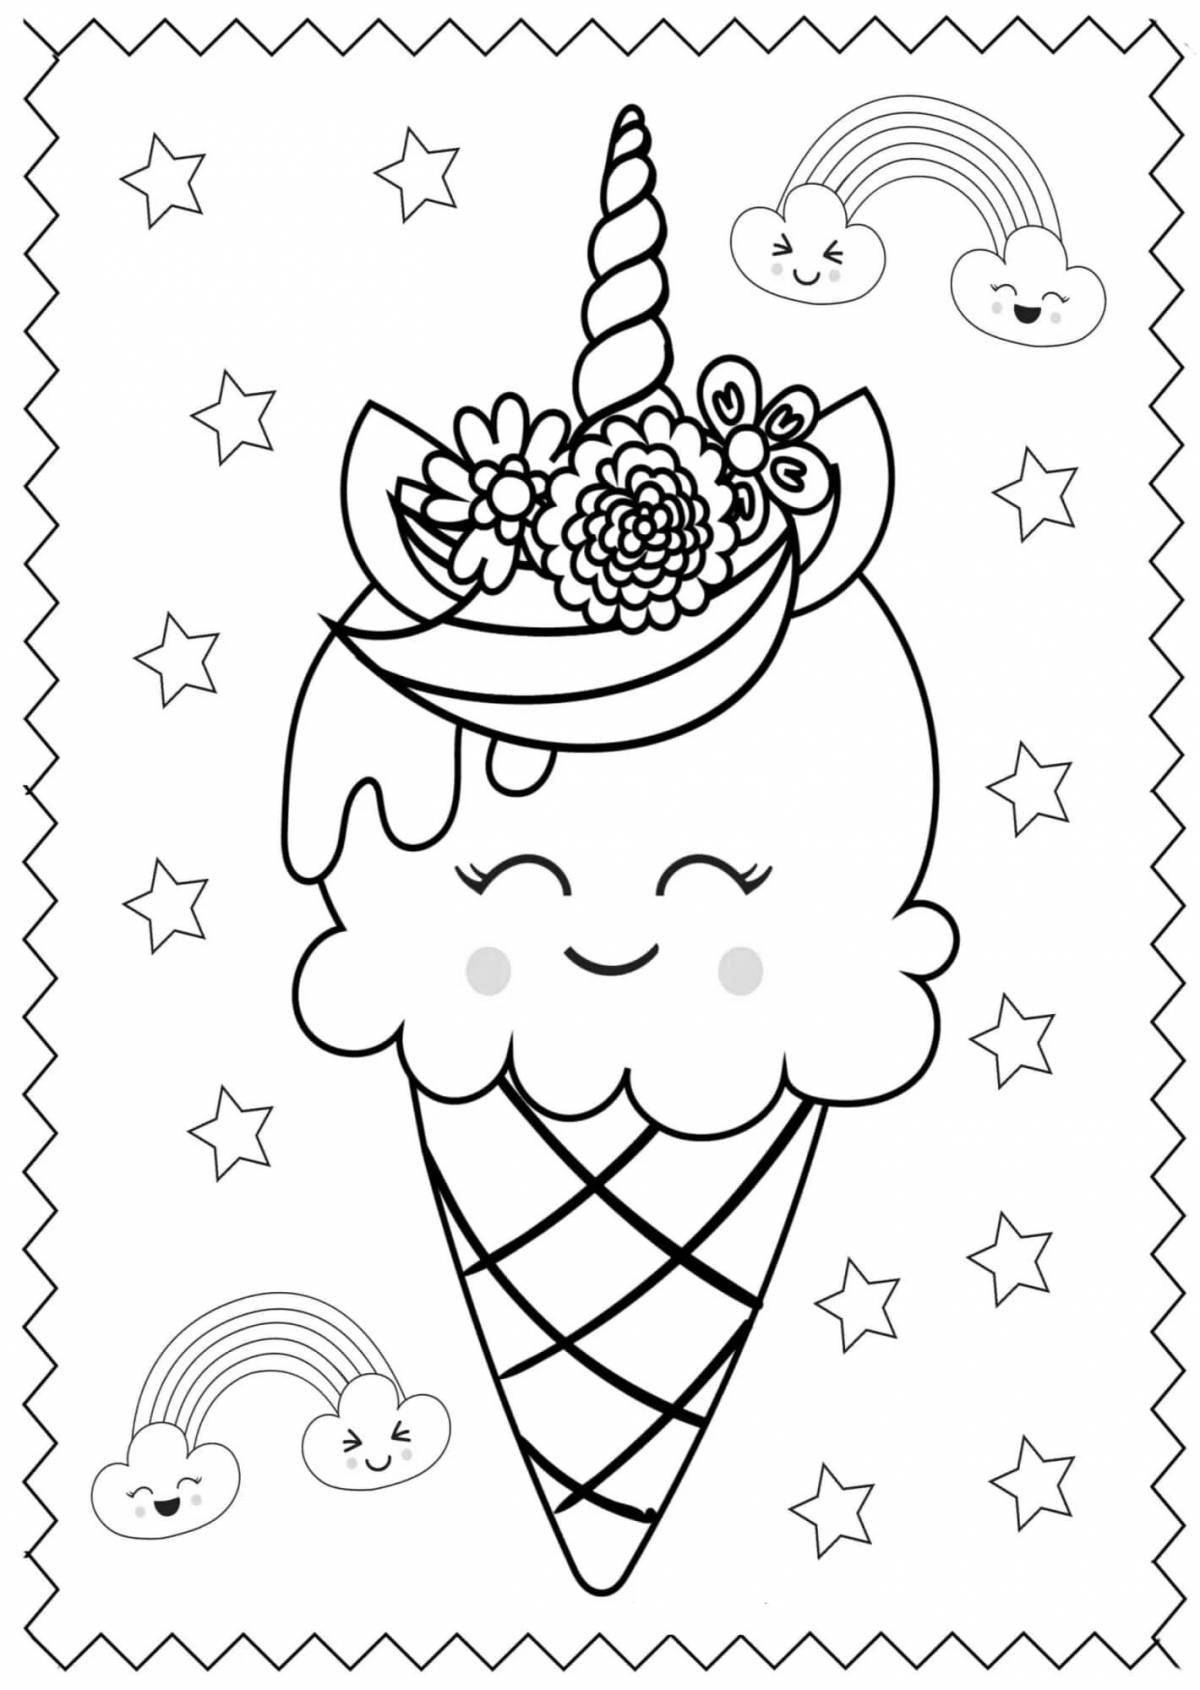 Colorful unicorn ice cream coloring book